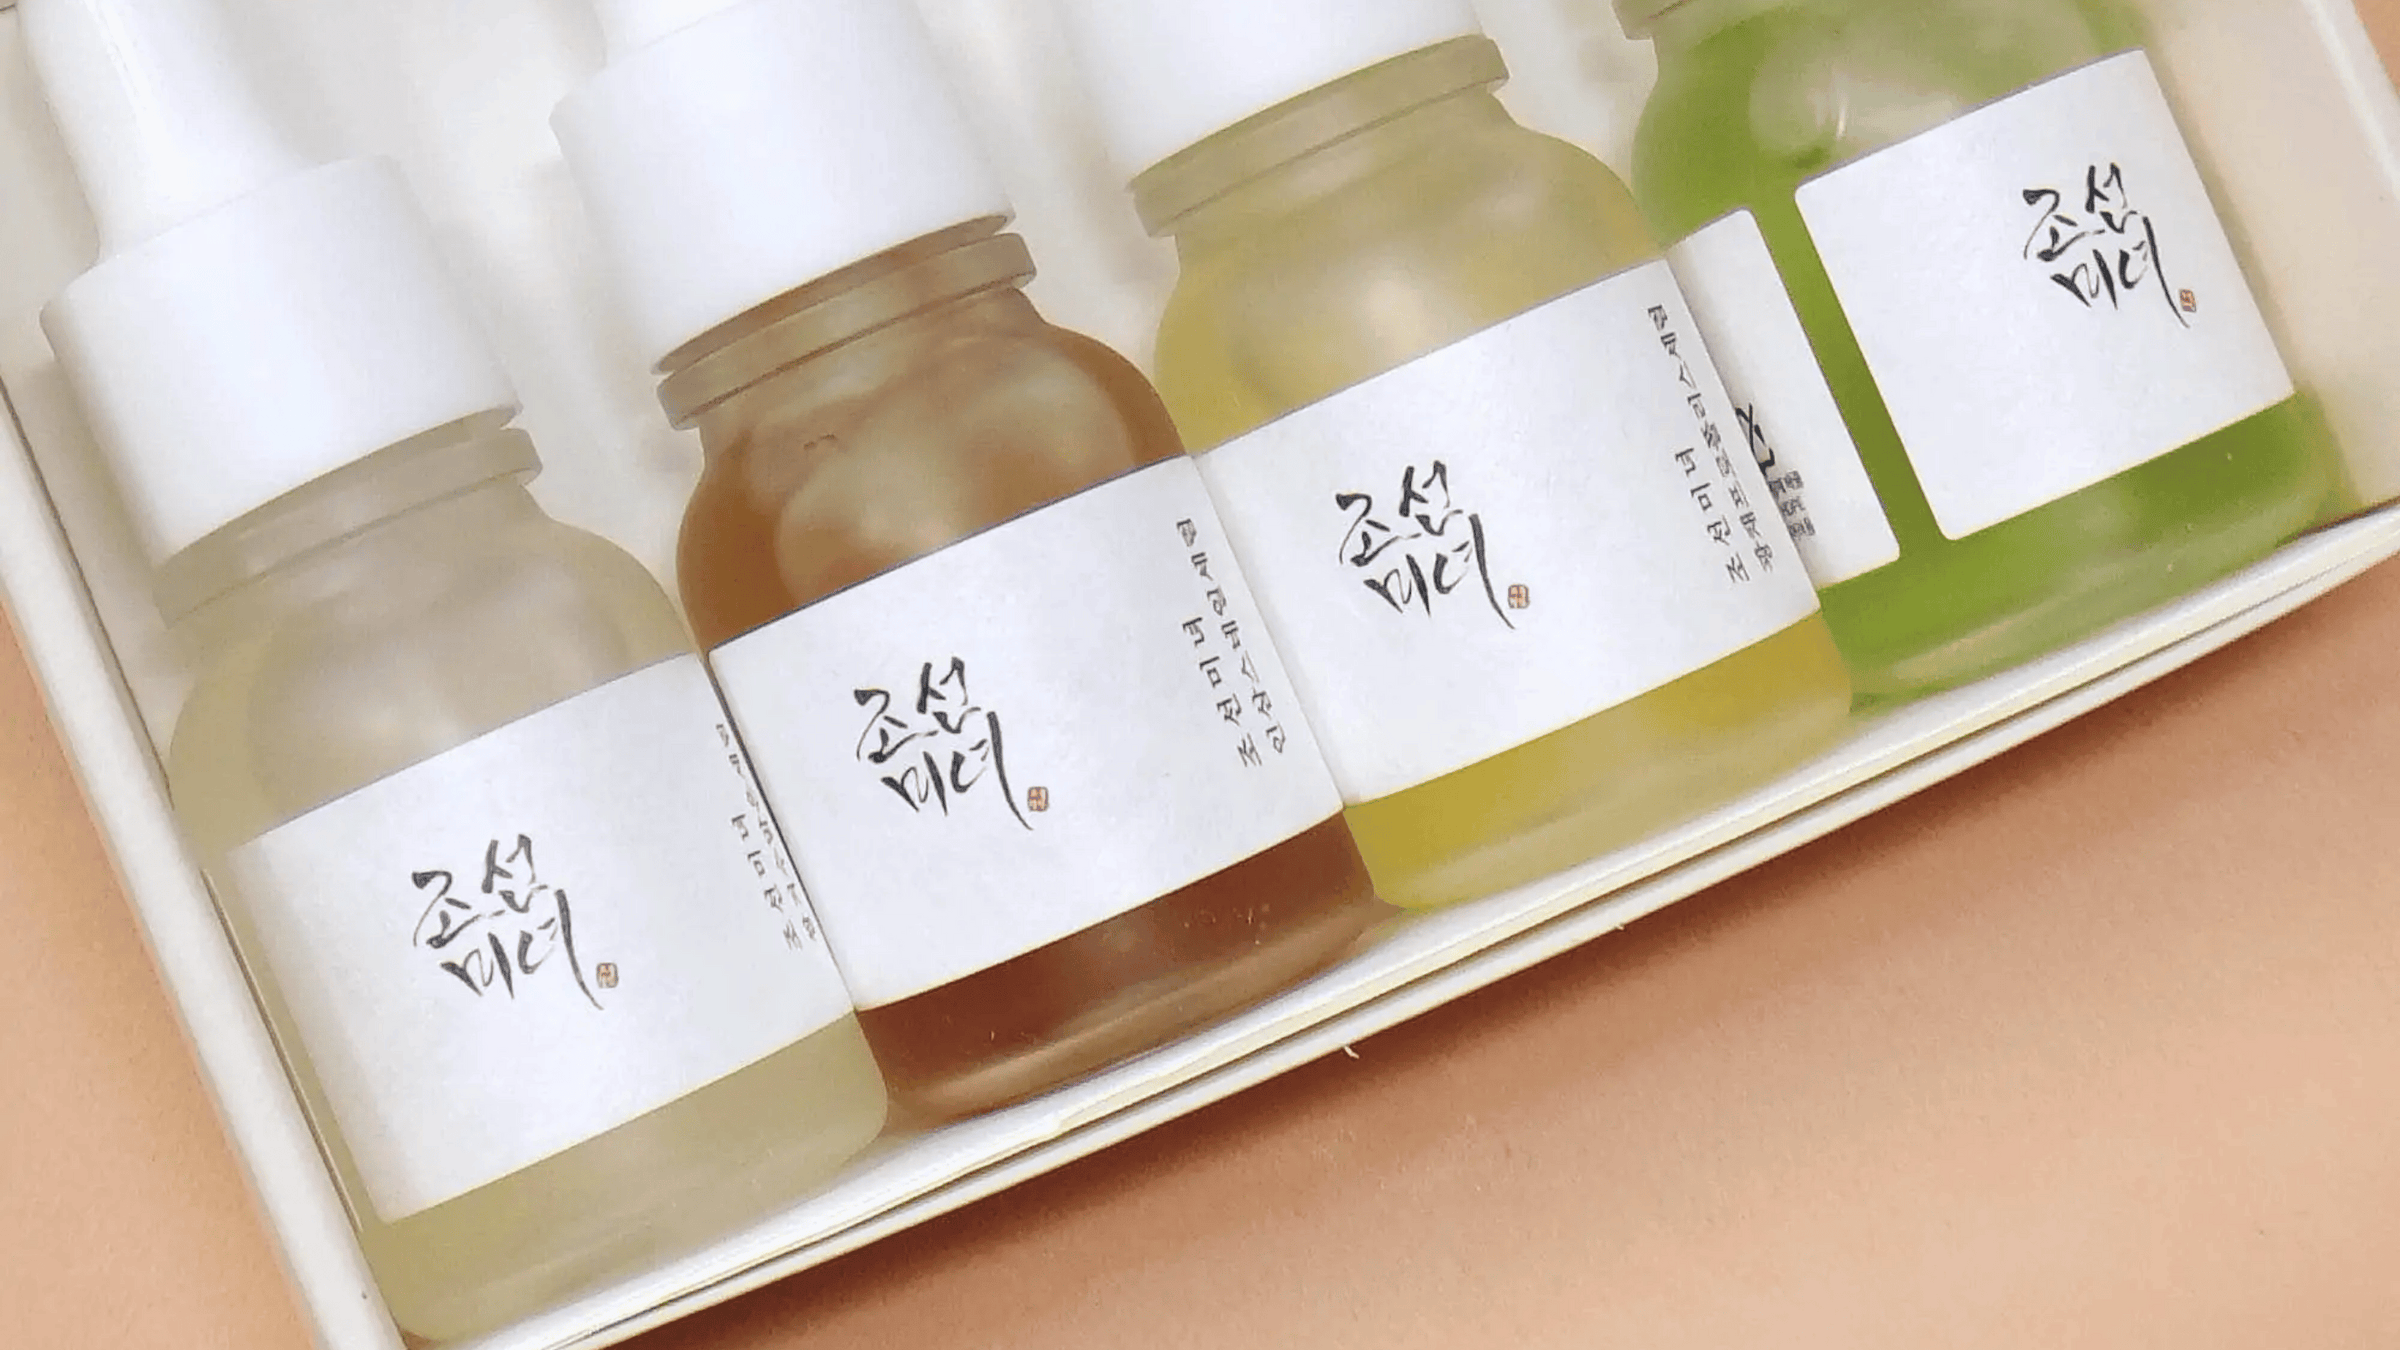  Bilden visar en samling serumflaskor från Beauty of Joseon, som är kända för sina hudvårdsprodukter inspirerade av traditionell koreansk medicin, hanbang.